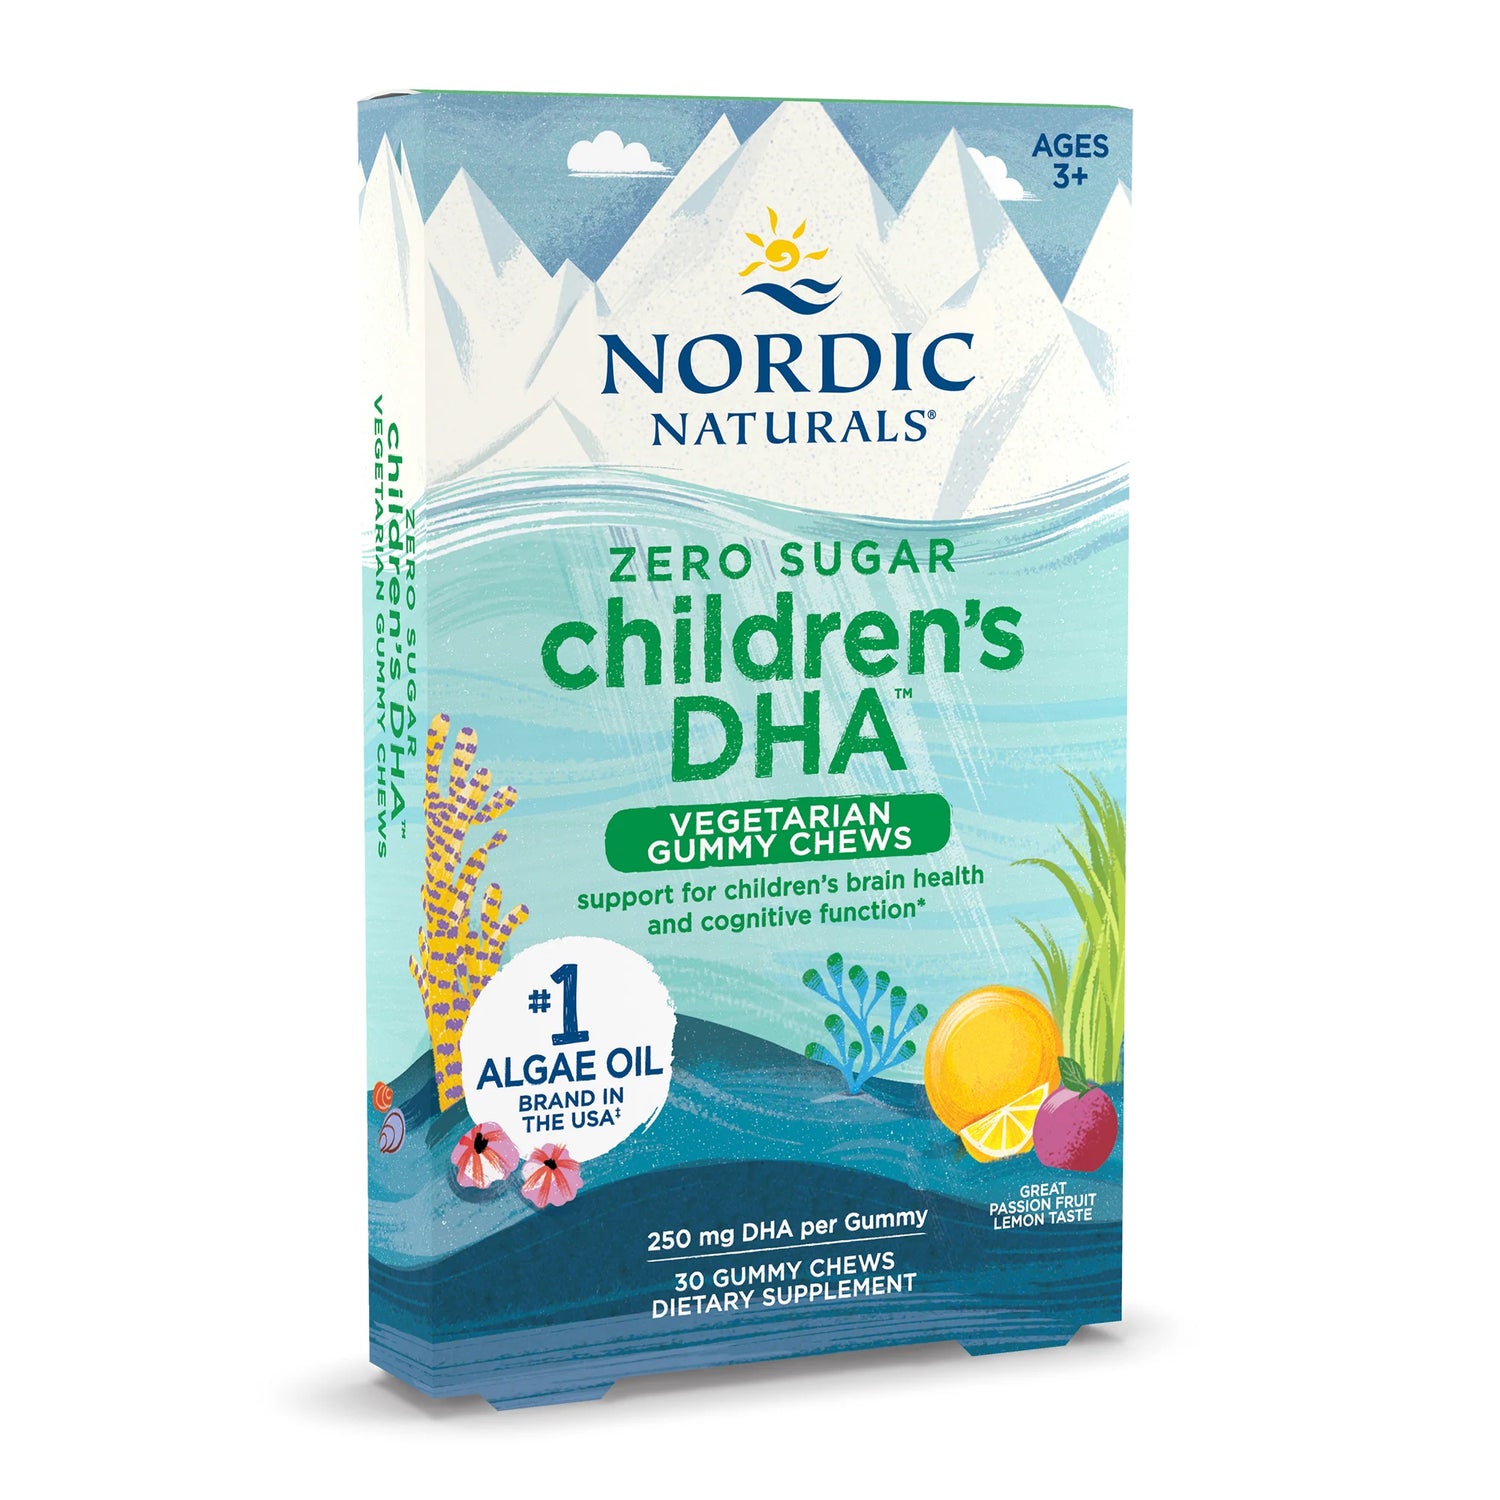 Nordic Naturals Zero Sugar Children’s DHA Vegetarian Gummy Chews